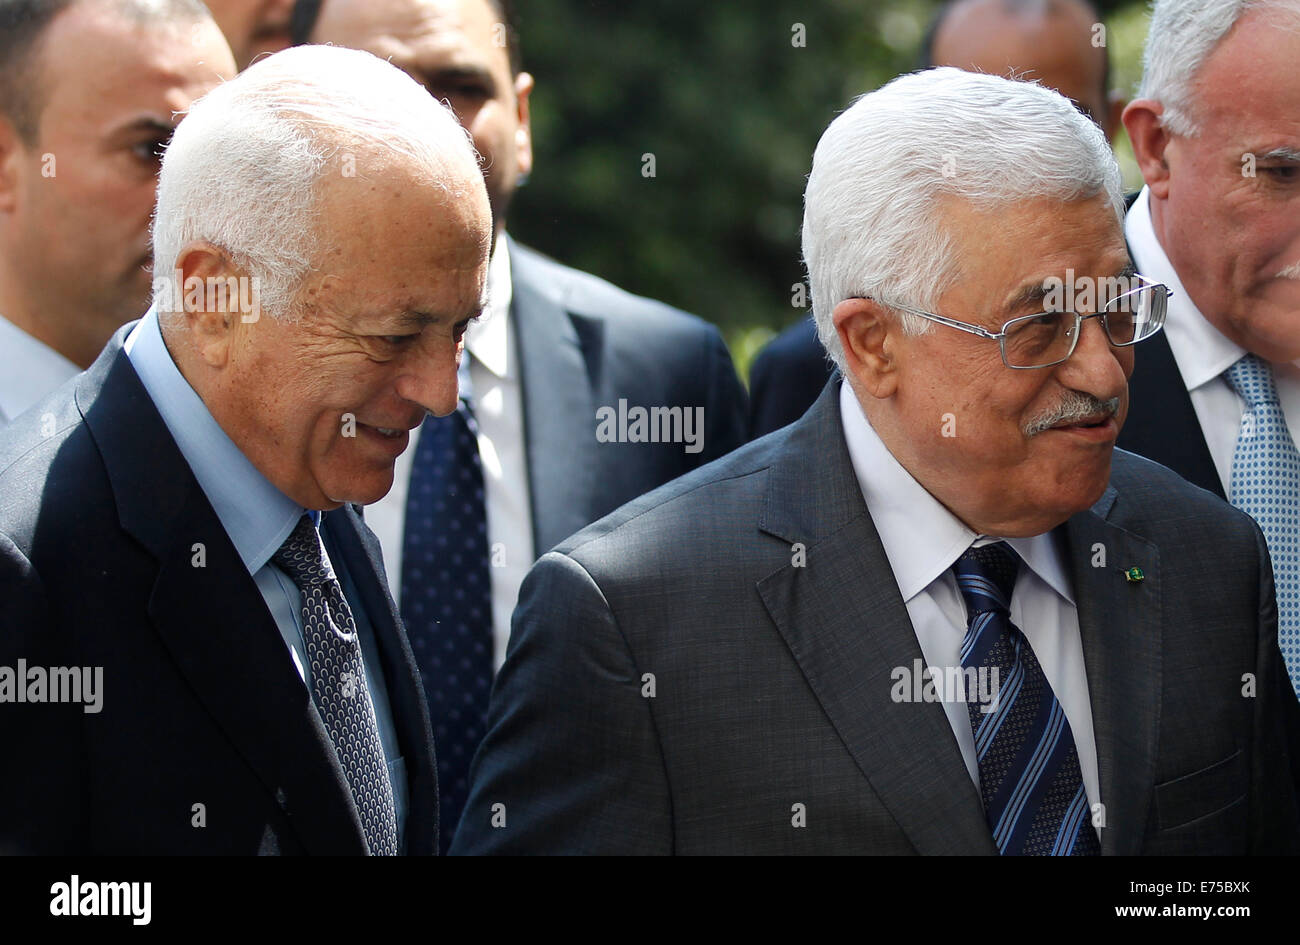 Le Caire, Égypte. Sep 7, 2014. Le Secrétaire général de la Ligue arabe, Nabil al-Arabi (L) et le président palestinien Mahmoud Abbas (R) marcher dans un une réunion d'urgence de la Ligue arabe au Caire, Egypte, 7 septembre 2014. Les ministres arabes des affaires étrangères ont été prévu pour délivrer une résolution pour faire face à la roue libre de militants de vastes régions de l'Iraq et la Syrie et l'a déclaré un des États islamiques. Credit : Ahmed Gomaa/Xinhua/Alamy Live News Banque D'Images